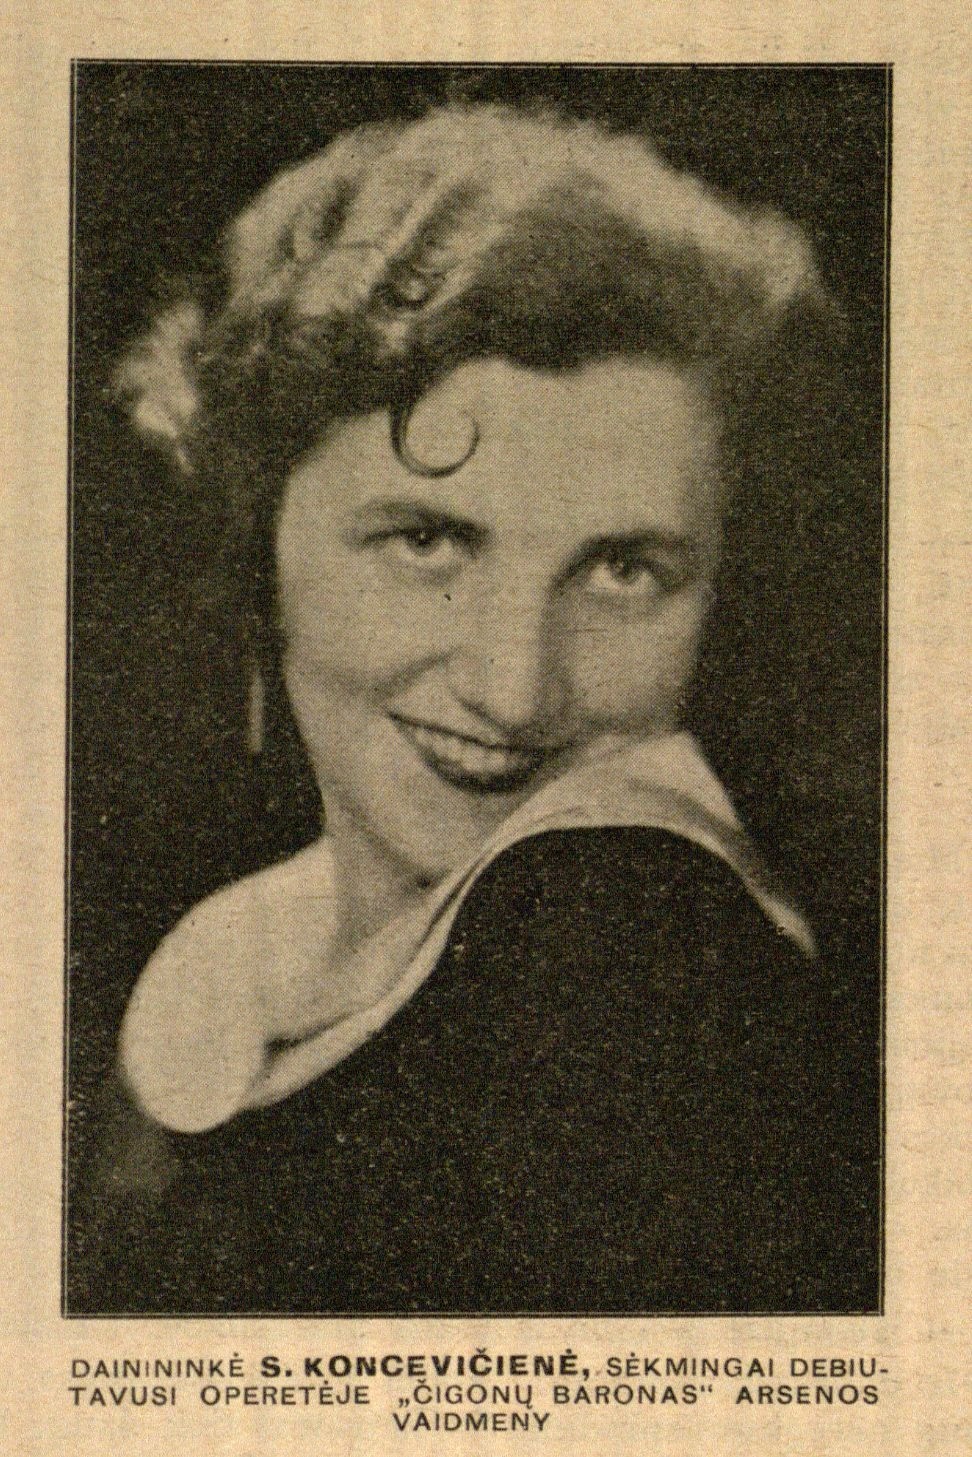 Dainininkė S. Koncevičienė, sėkmingai debiutavusi operetėje „Čigonų baronas“ Arsenos vaidmenyje // Naujoji Romuva. – 1934, Nr. 201, p. 817.